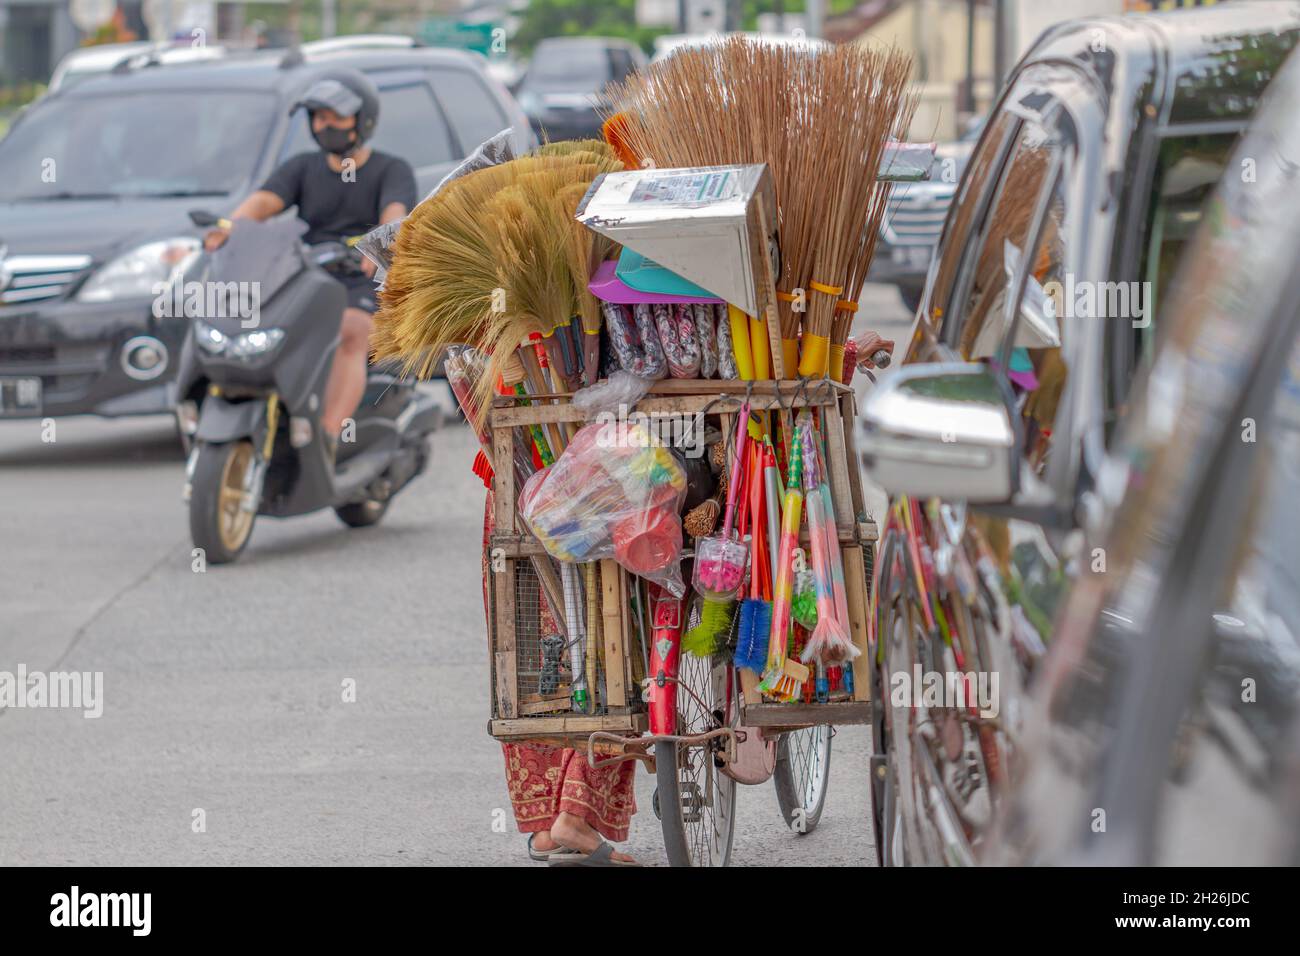 Eine Frau, die Reinigungs- und Haushaltsgegenstände verkauft, benutzt ein Fahrrad als Transportmittel. BOYOLALI, INDONESIEN - 18. OKTOBER 2021. Stockfoto